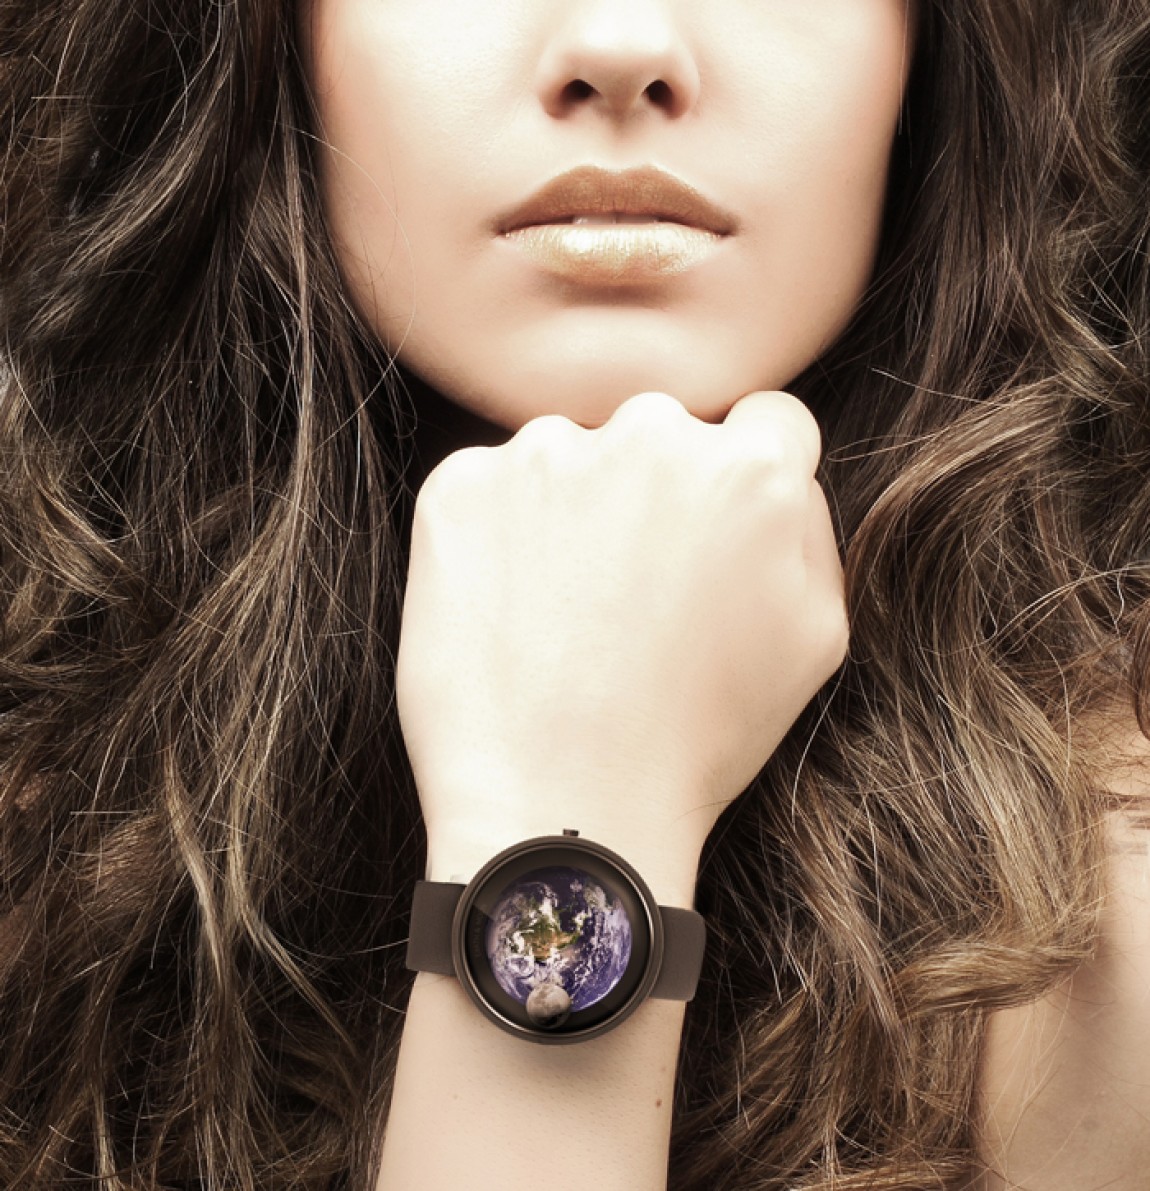 Жена часами смотрит. Красивые женские часы. Красивые часы на руку. Часы на руку женские. Девушка с часами.